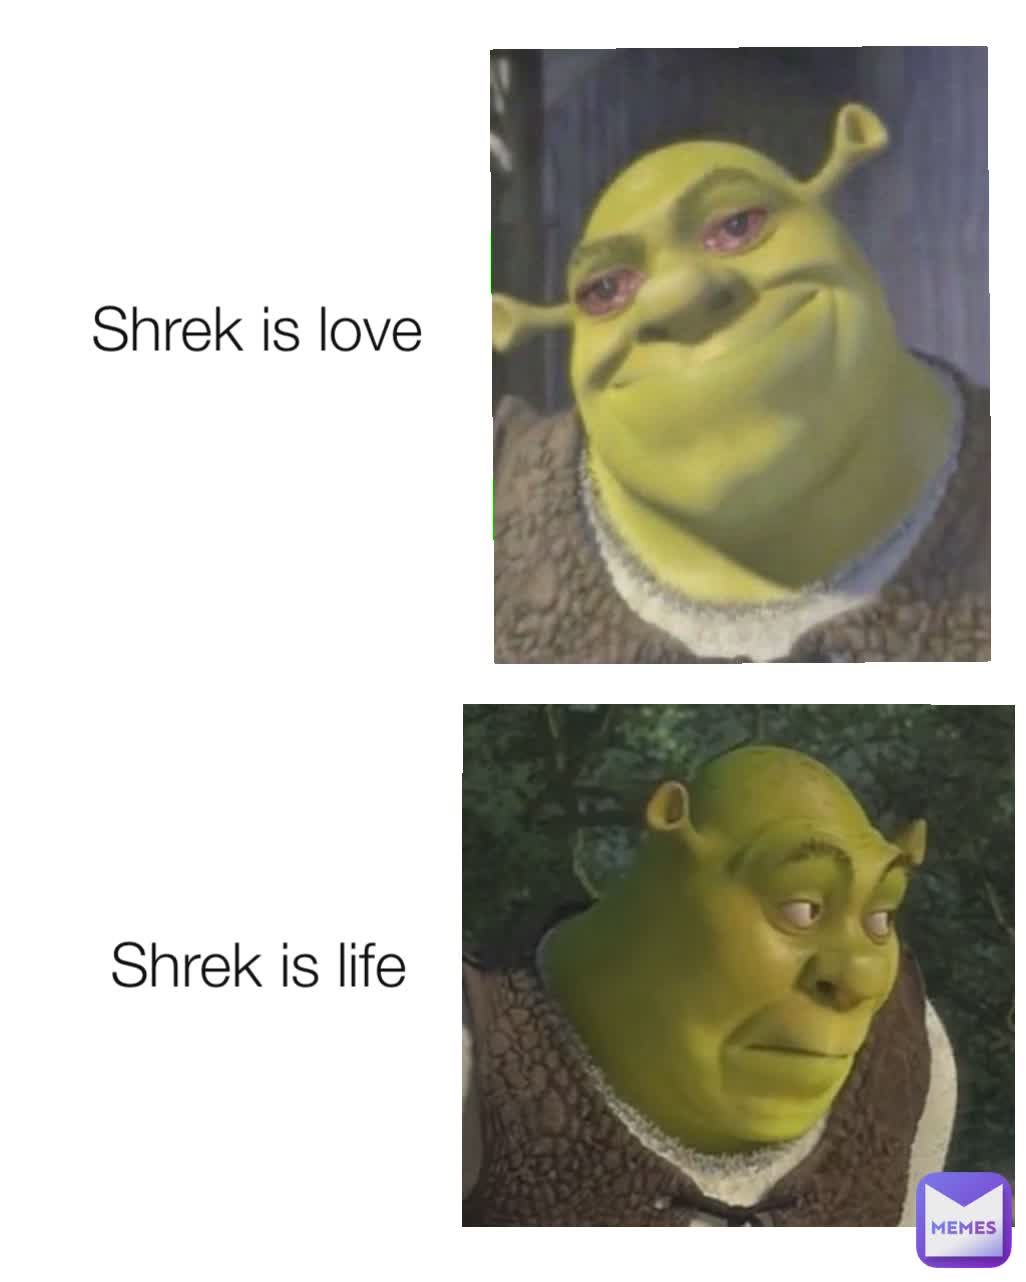 Shrek Is Love Shrek Is Life